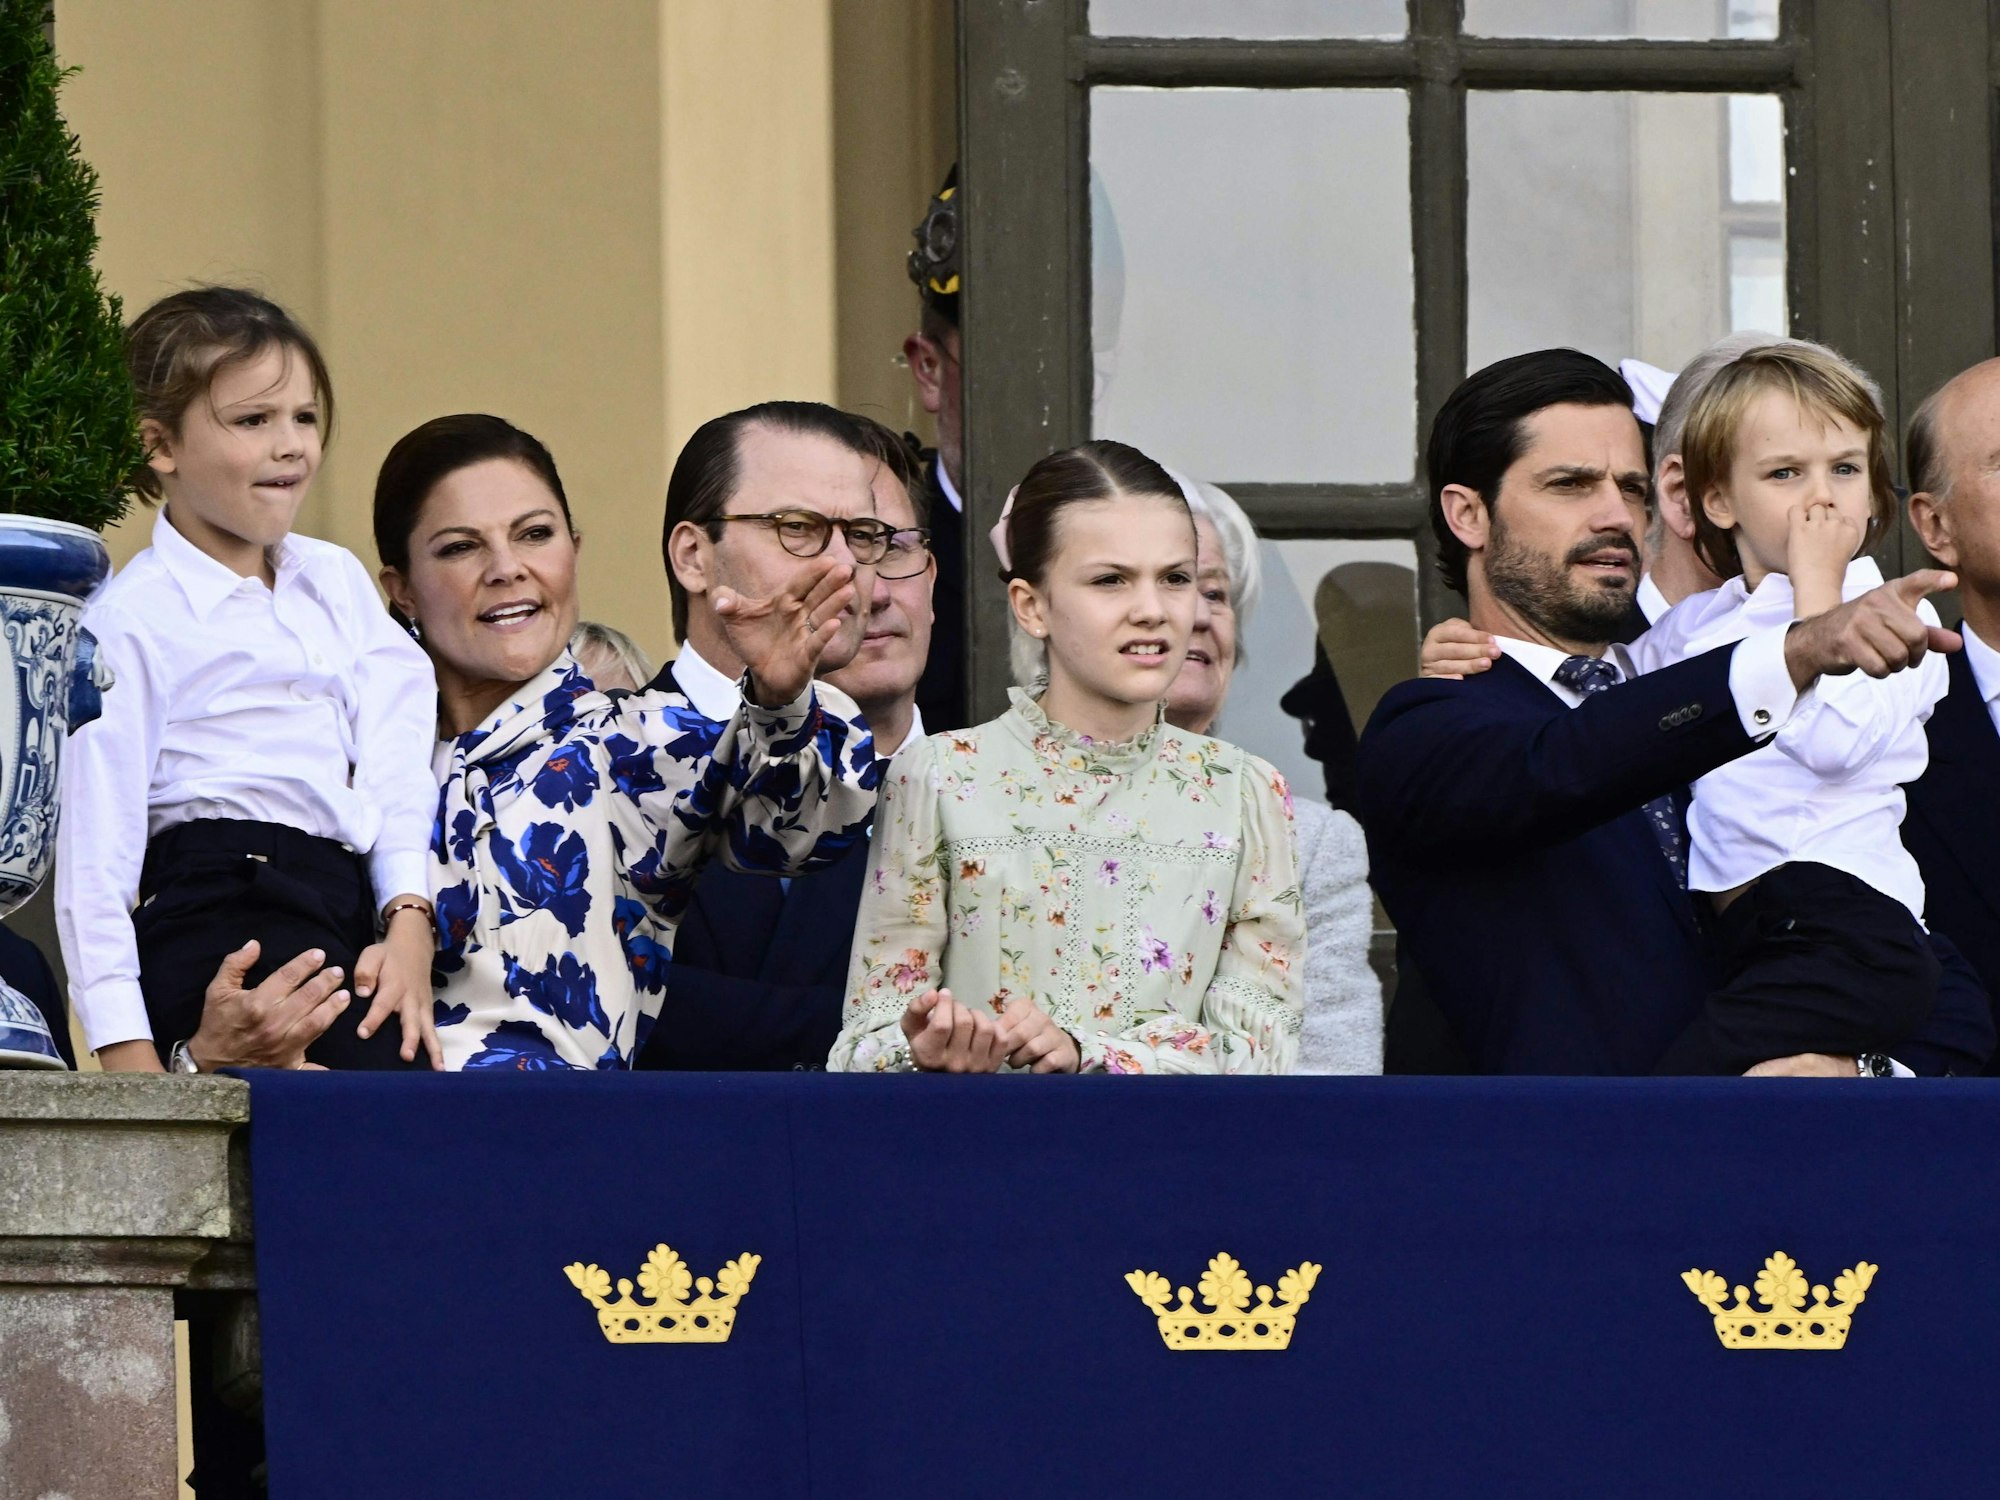 (l-r) Prinz Alexander von Schweden, Kronprinzessin Victoria von Schweden, Prinz Daniel von Schweden, Prinzessin Estelle von Schweden, Prinz Carl Philip von Schweden und Prinz Gabriel von Schweden stehen am 16. September 2023 während der Feierlichkeiten zum 50. Jahrestag der Thronbesteigung von König Carl XVI. Gustaf auf dem Balkon des Königlichen Schlosses in Stockholm, Schweden.